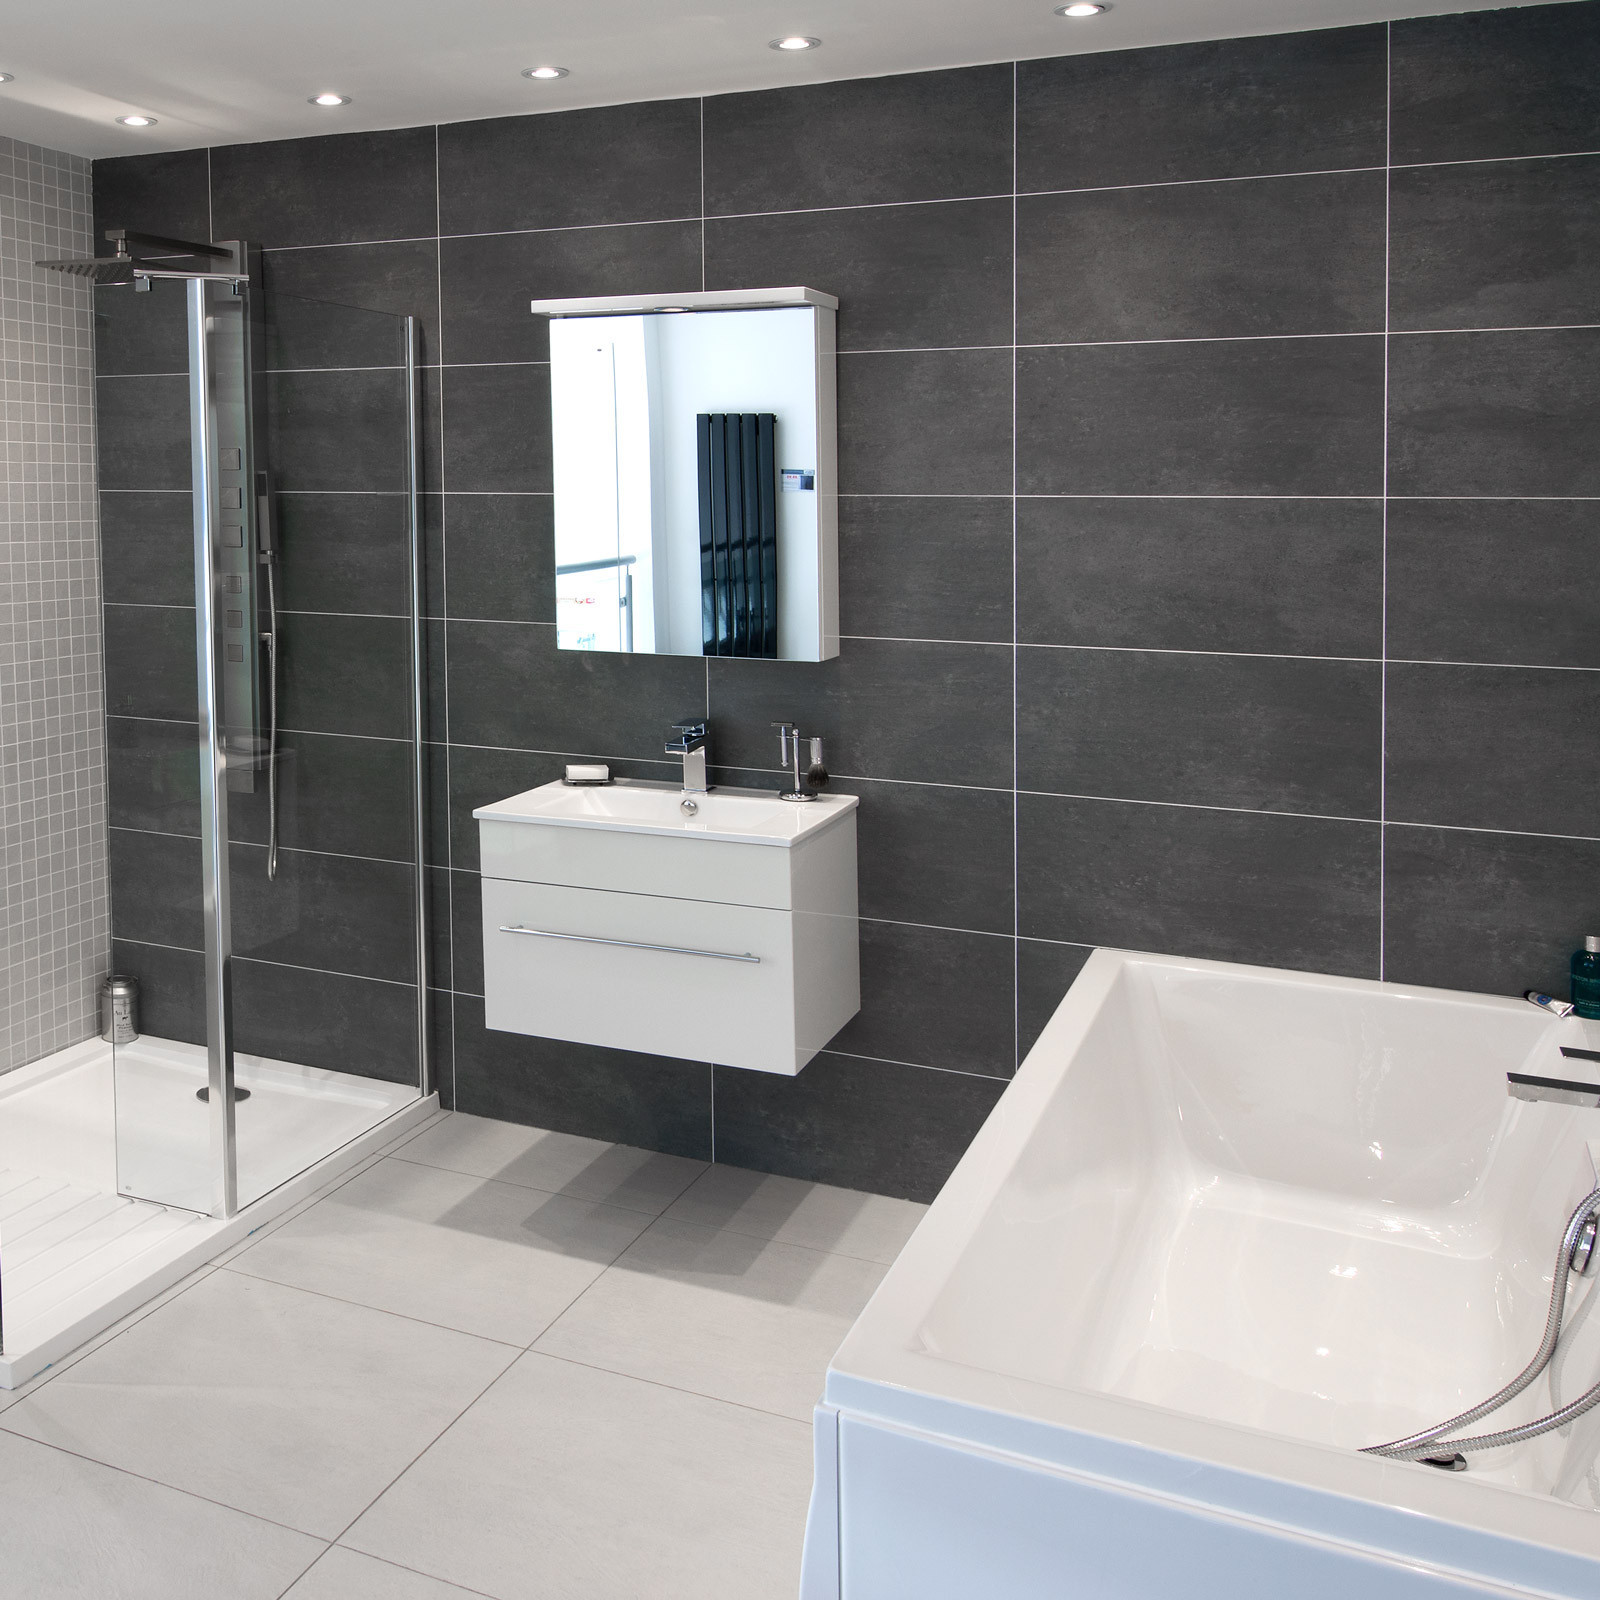 Dark Grey Bathroom Tiles
 Cementi Dark Grey Porcelain Wall Floor Tile